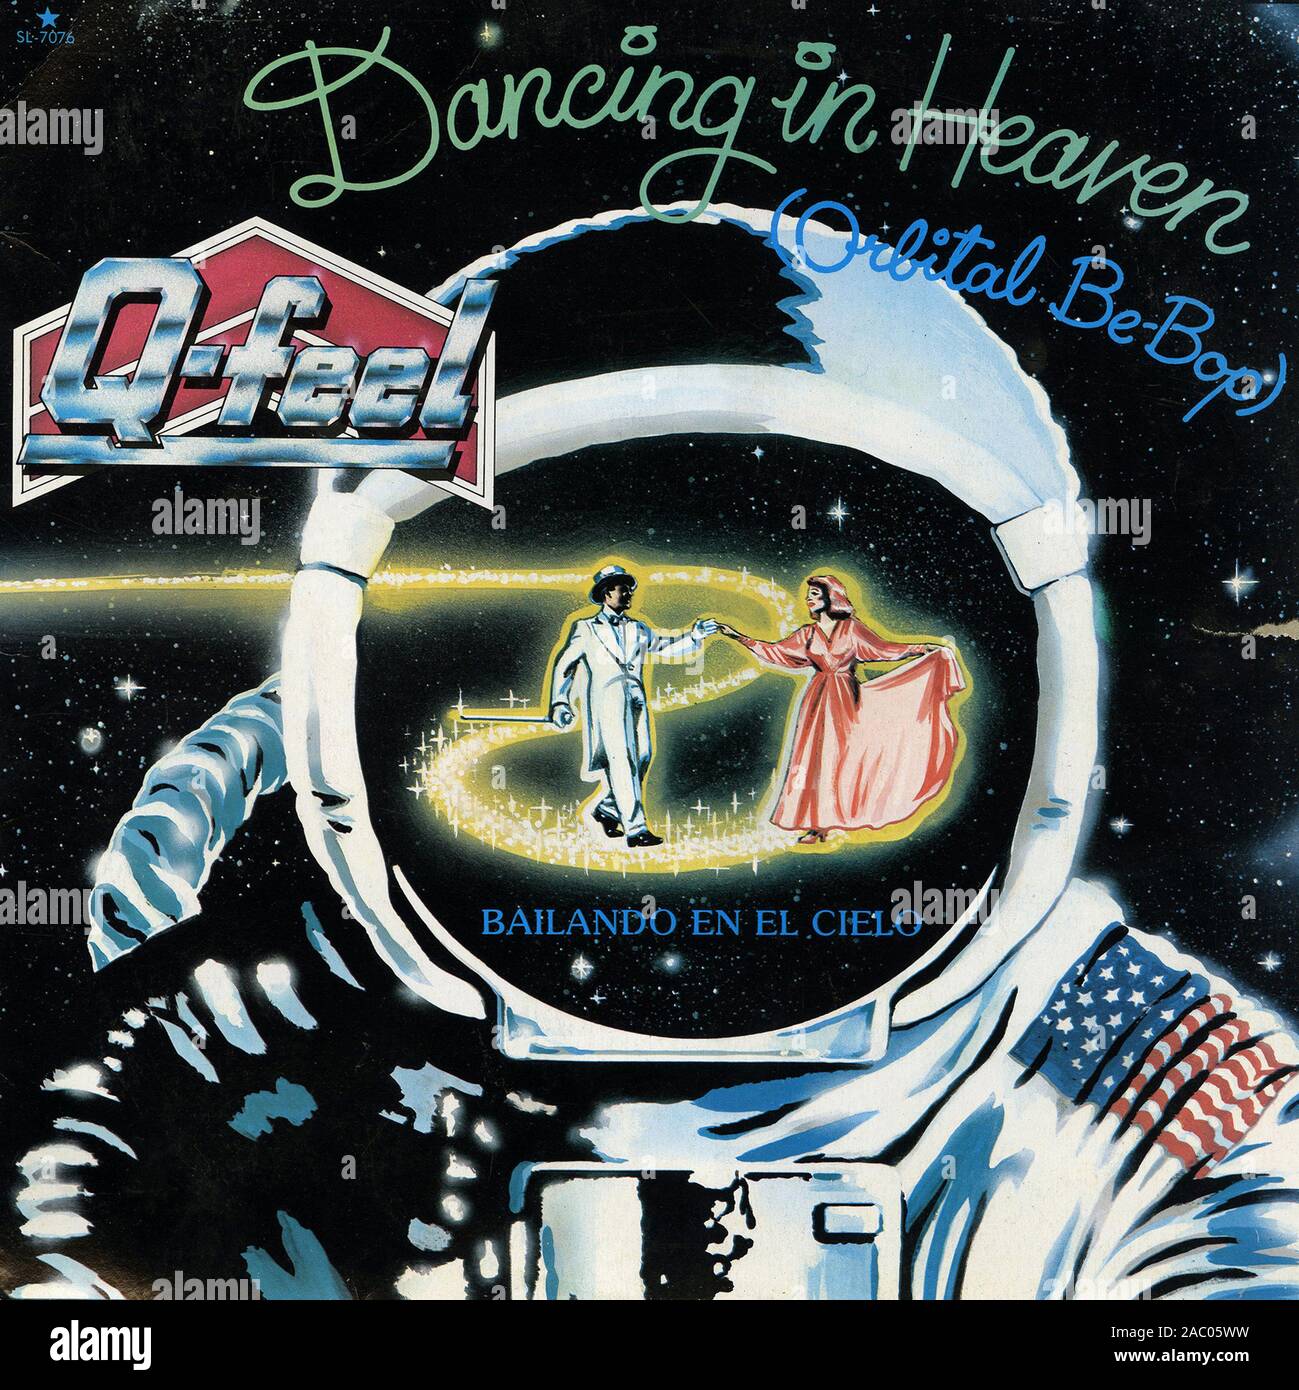 Dancing In Heaven (Orbital Be-Bop) _ Bailando En El Cielo   - Vintage vinyl album cover Stock Photo